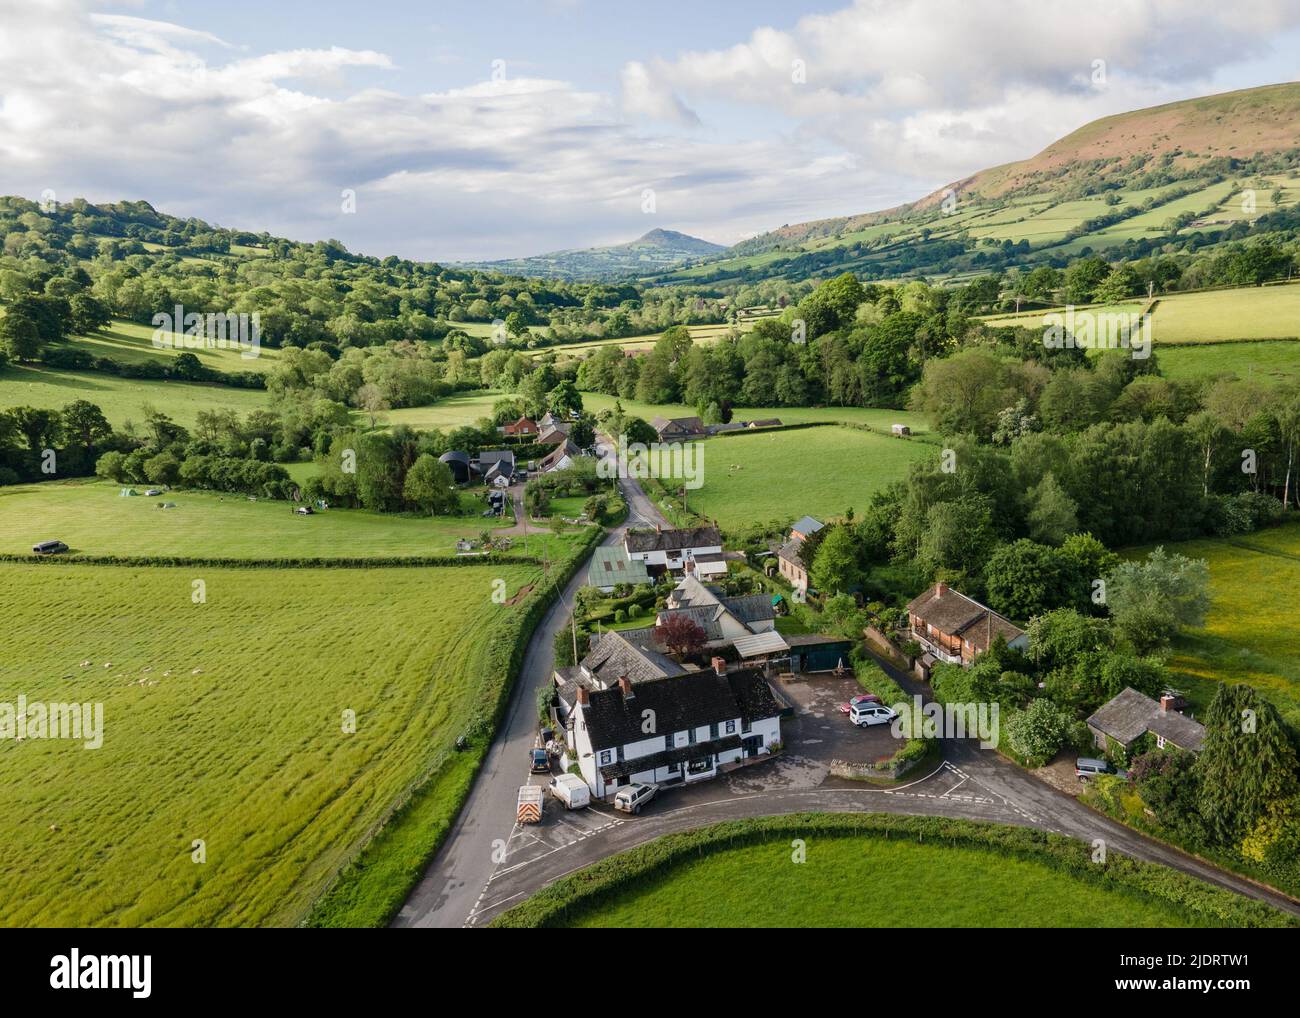 Vista aerea di un pub inglese rurale in Herefordshire sul confine Inghilterra Galles- Regno Unito Foto Stock